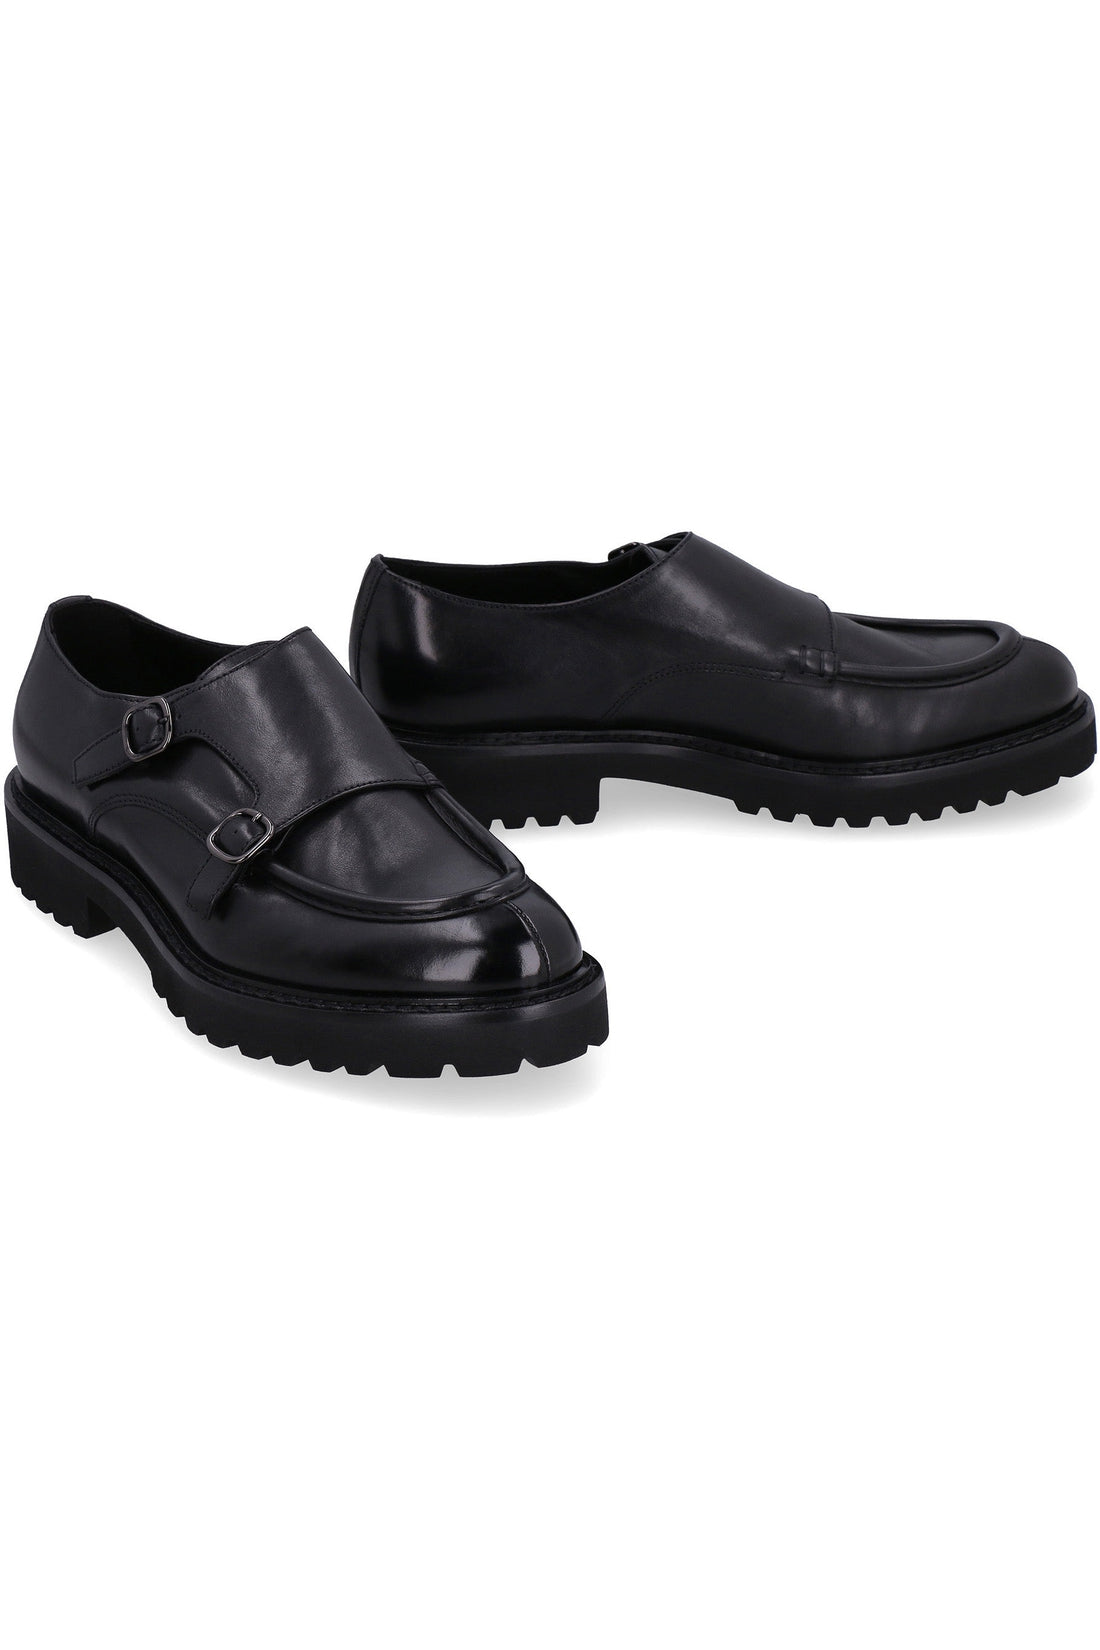 Doucal's-OUTLET-SALE-Leather monk-strap shoes-ARCHIVIST